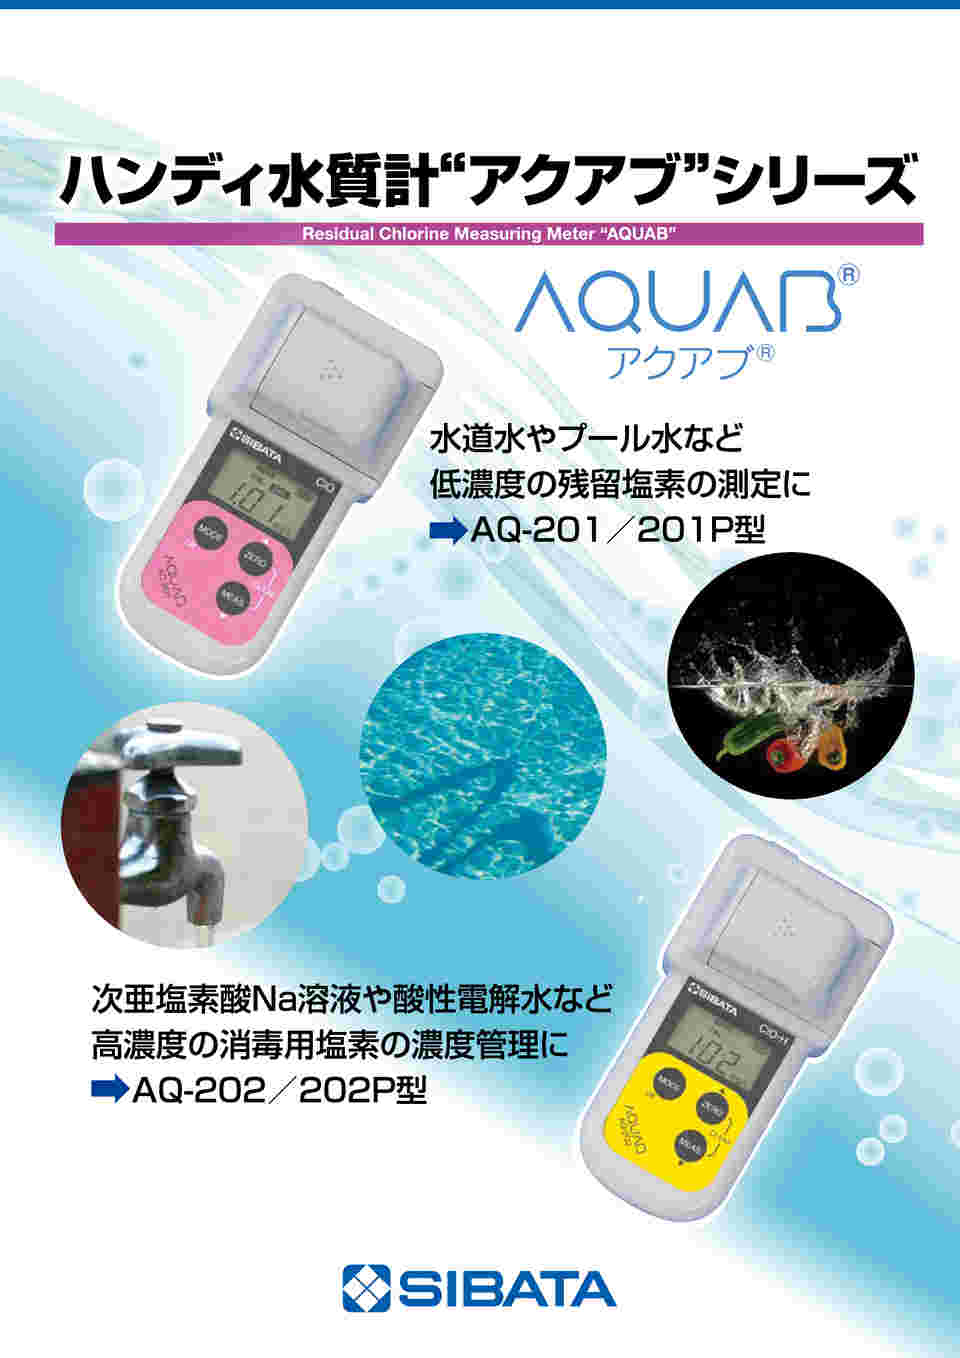 柴田科学 水質計アクアブ AQ-202型 残留塩素高濃度 080560-202